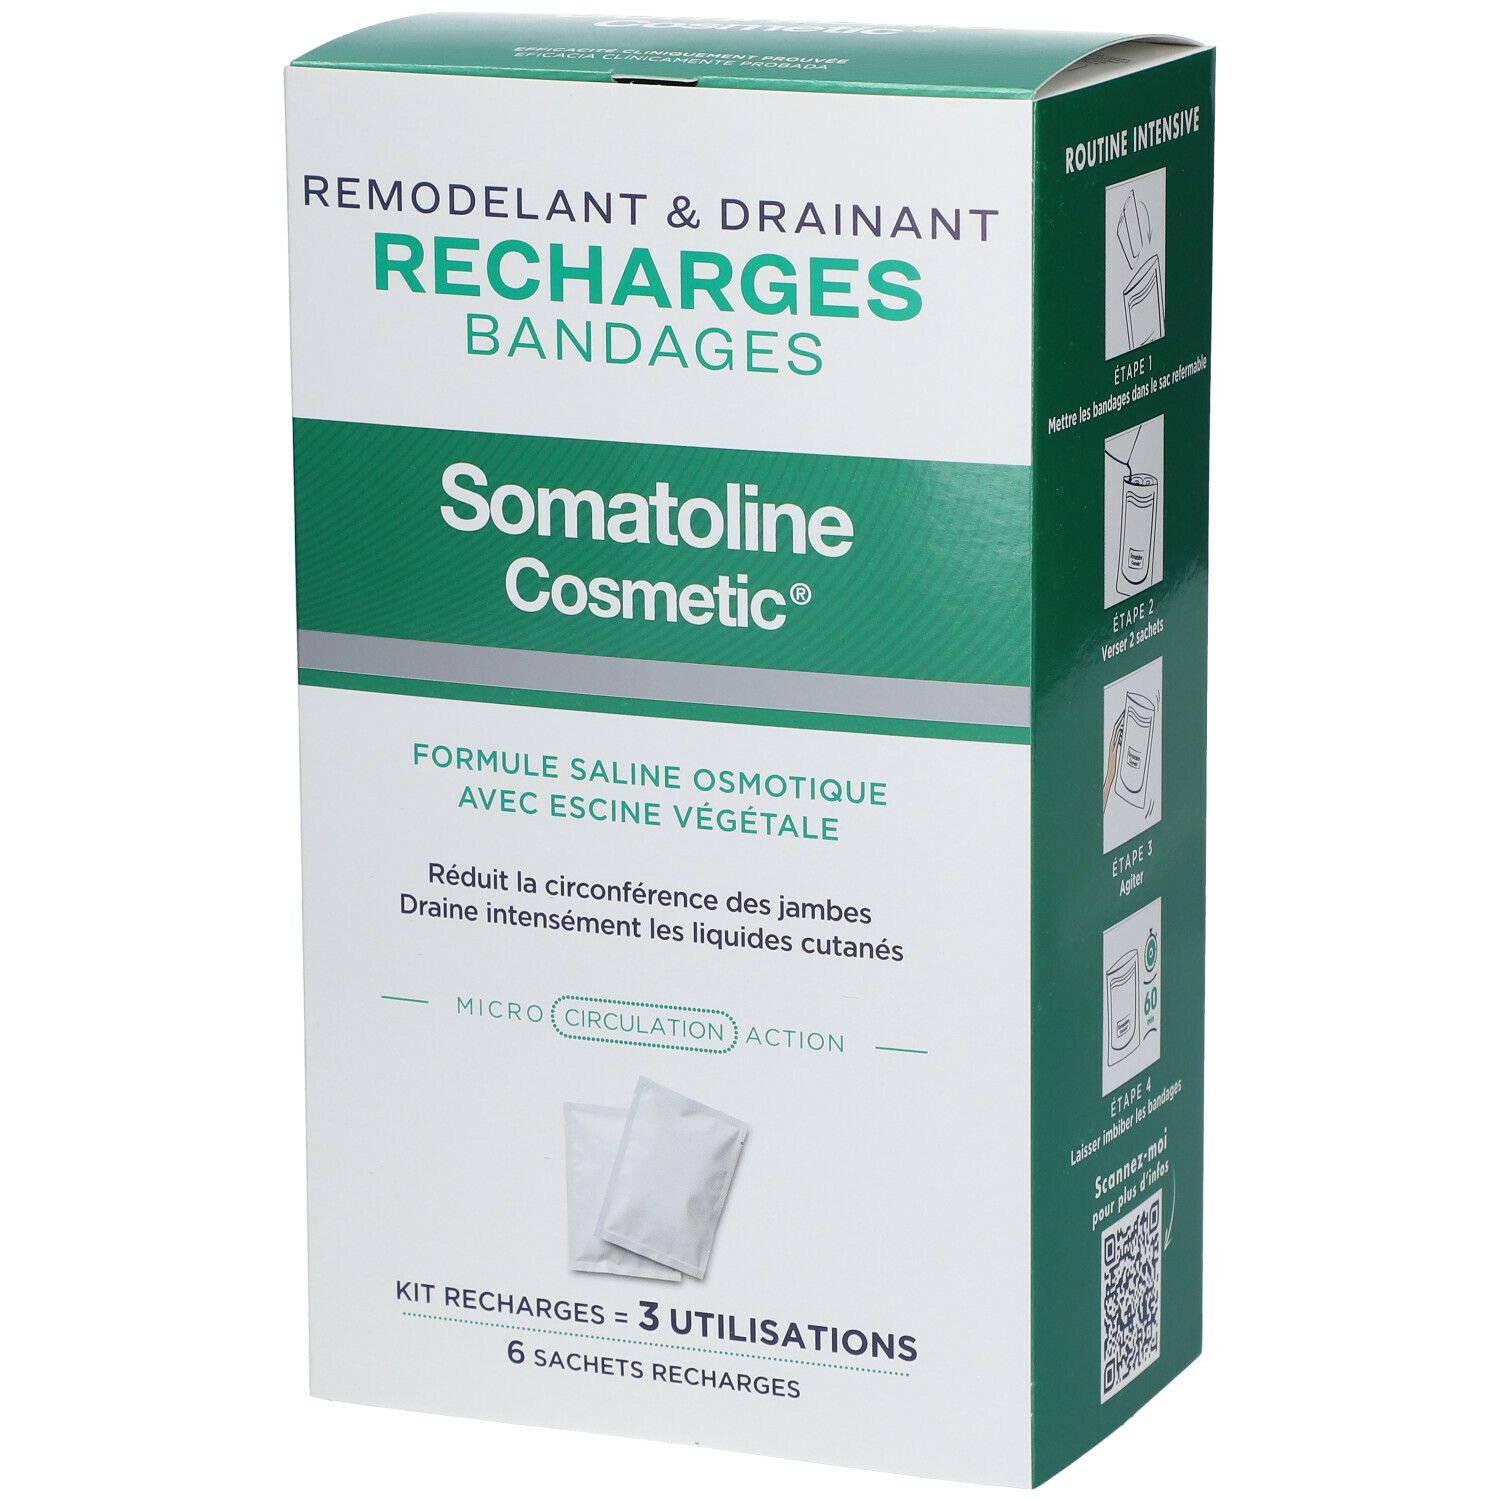 Somatoline Cosmetic® Recharges Bandages Remodelants & Drainants